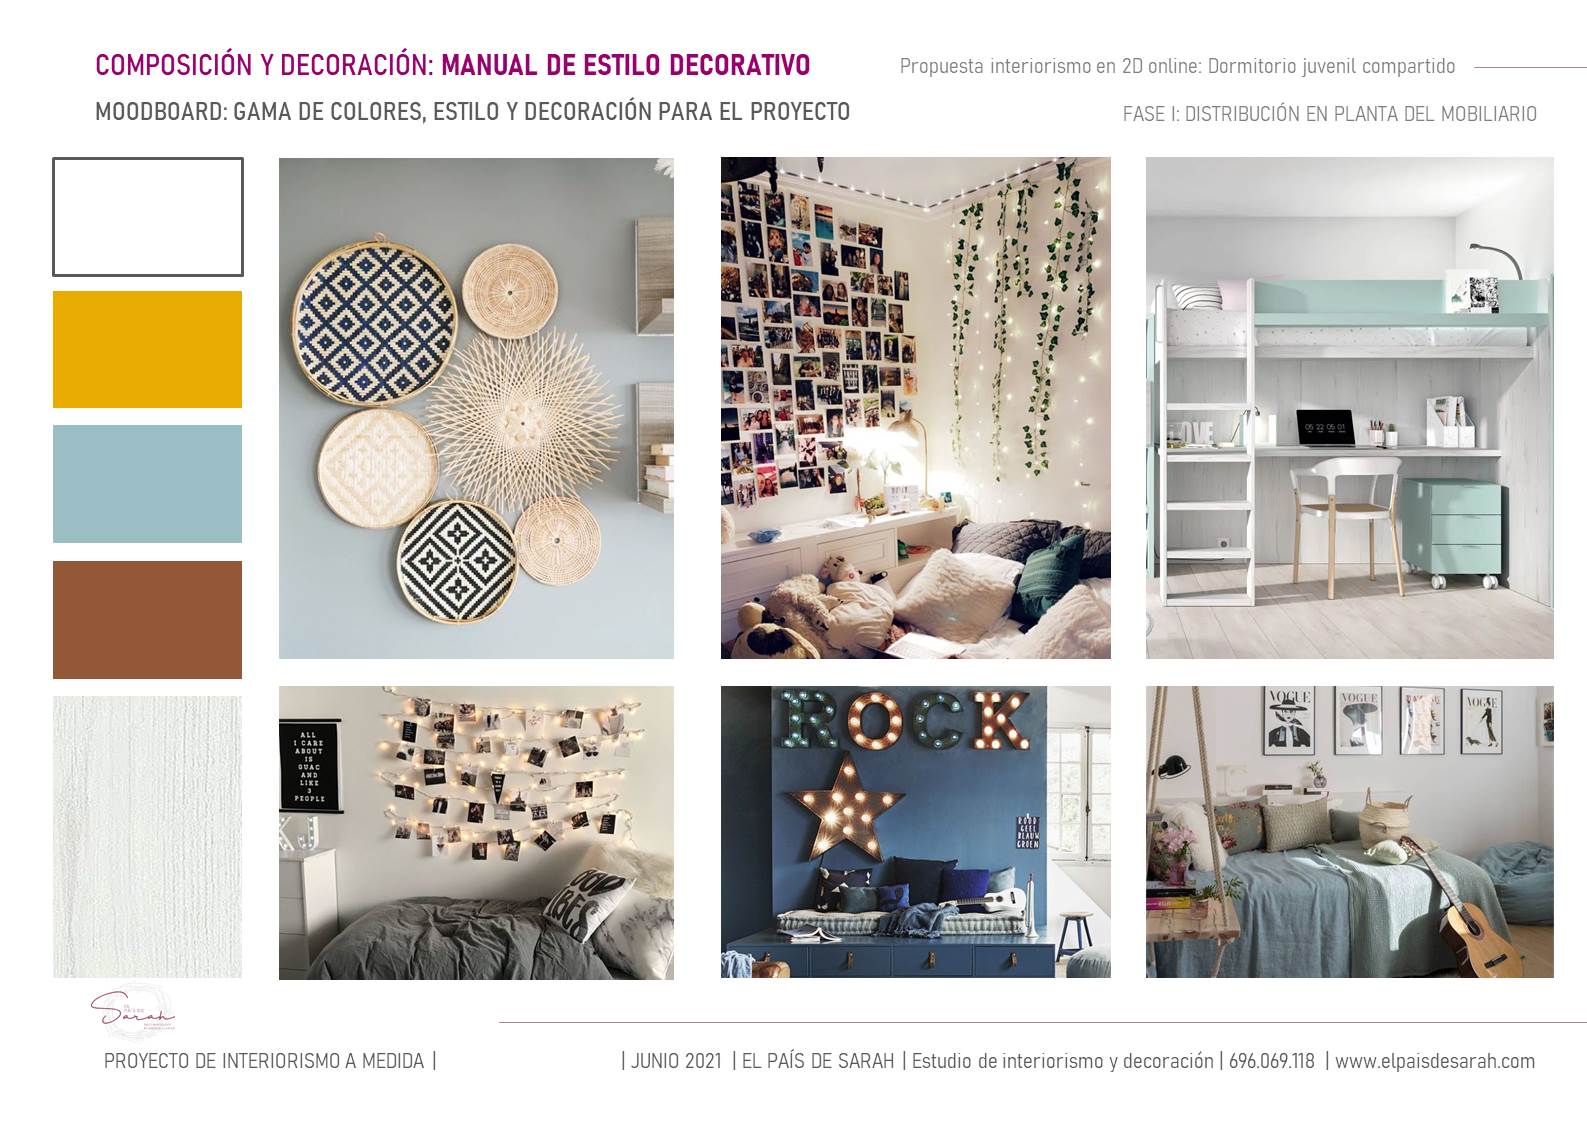 pre-proyecto_diseño_dormitorio_juvenil_compartido_interiorsmo_decoración_interiores-06